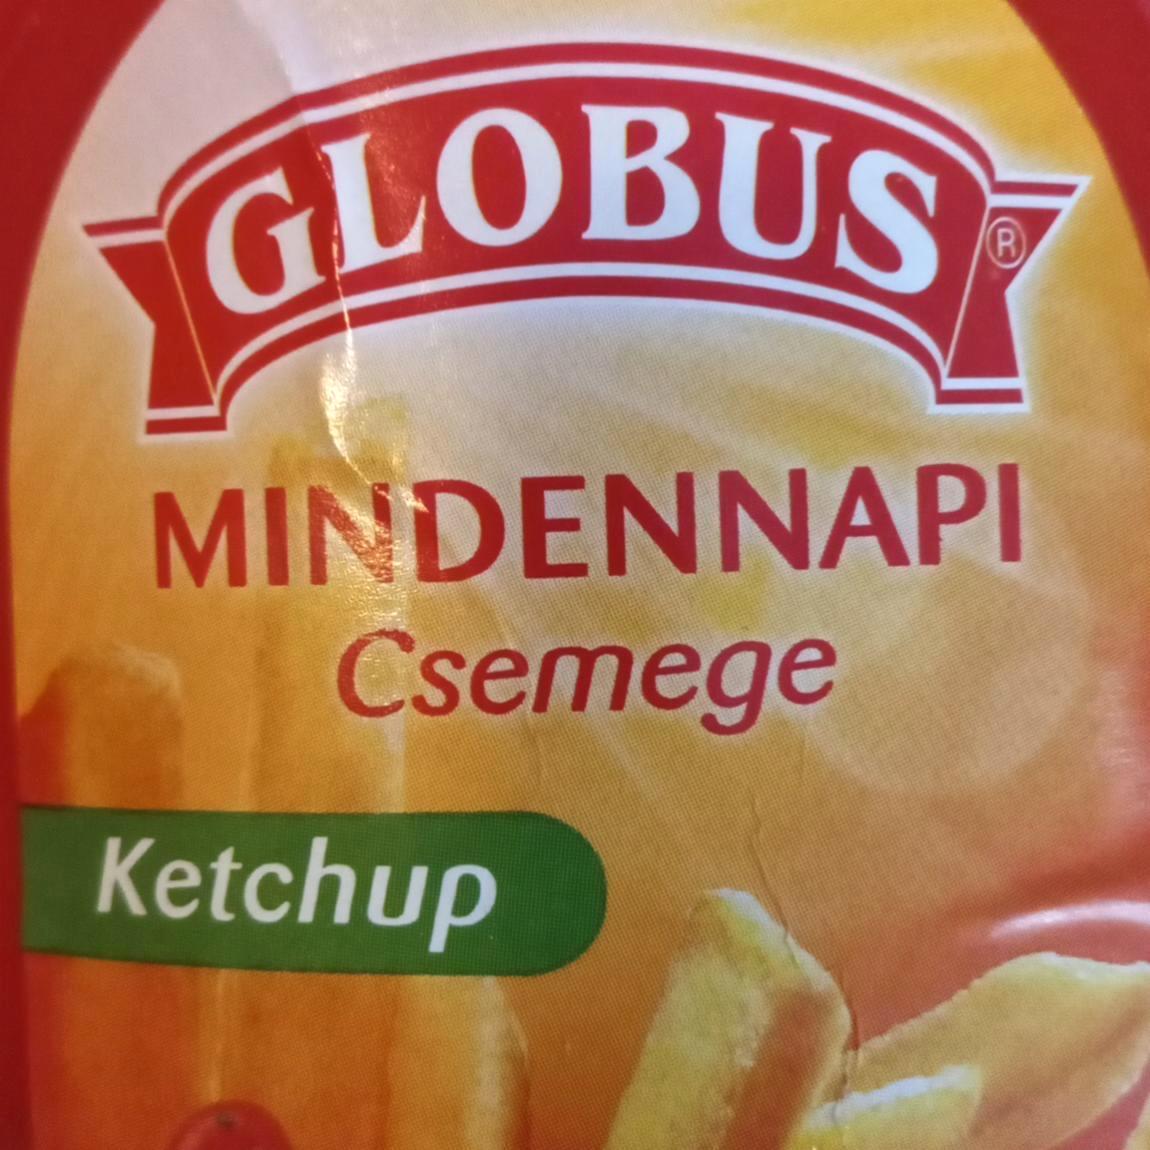 Képek - Globus Mindennapi csemege ketchup 450 g